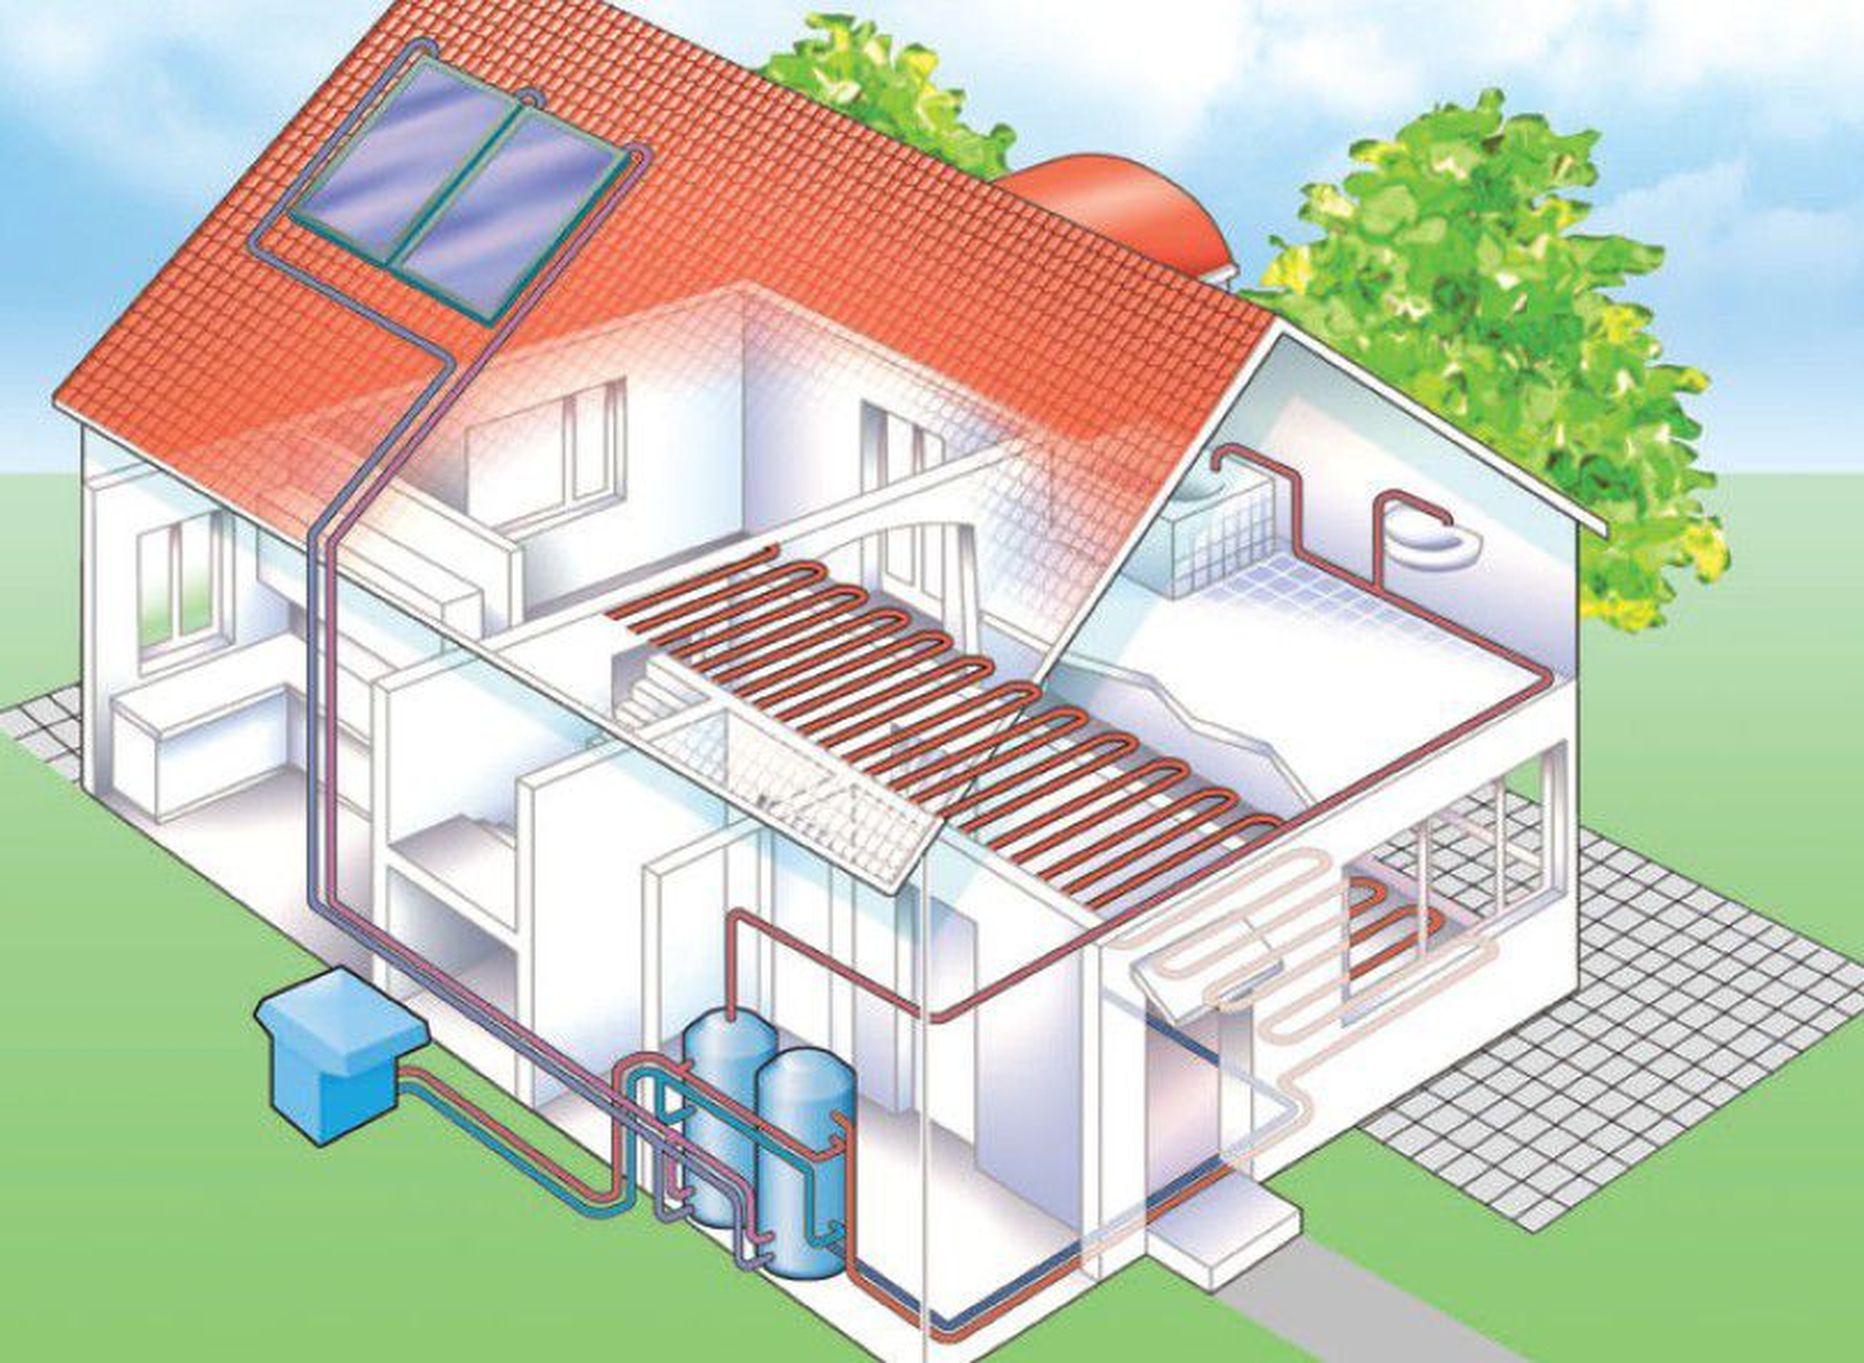 Õhk-vesi soojuspumpa saab kombineerida ka päikesepaneelidega, et saadavat energiakogust veelgi suurendada.